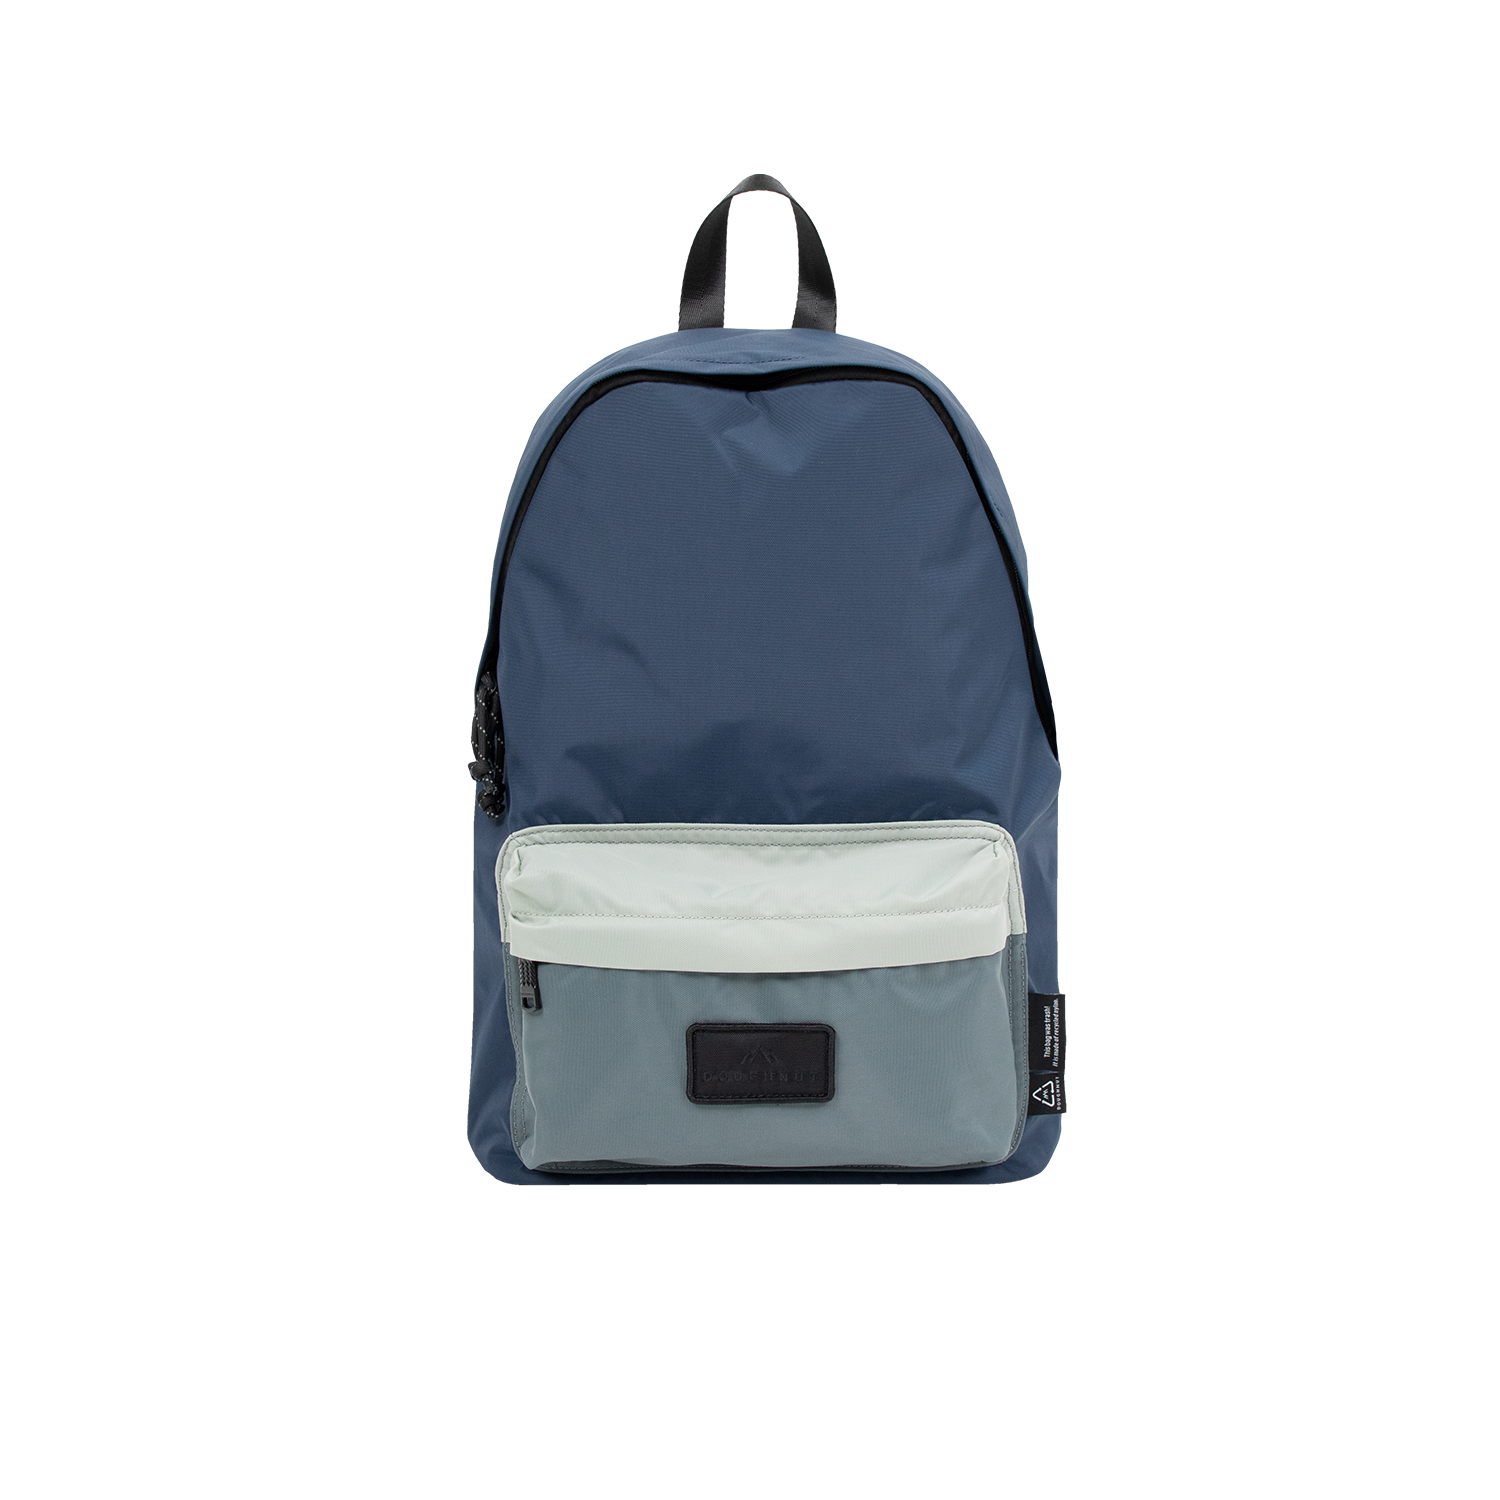 Plus One Go Wild Series Backpack – Doughnut Backpack